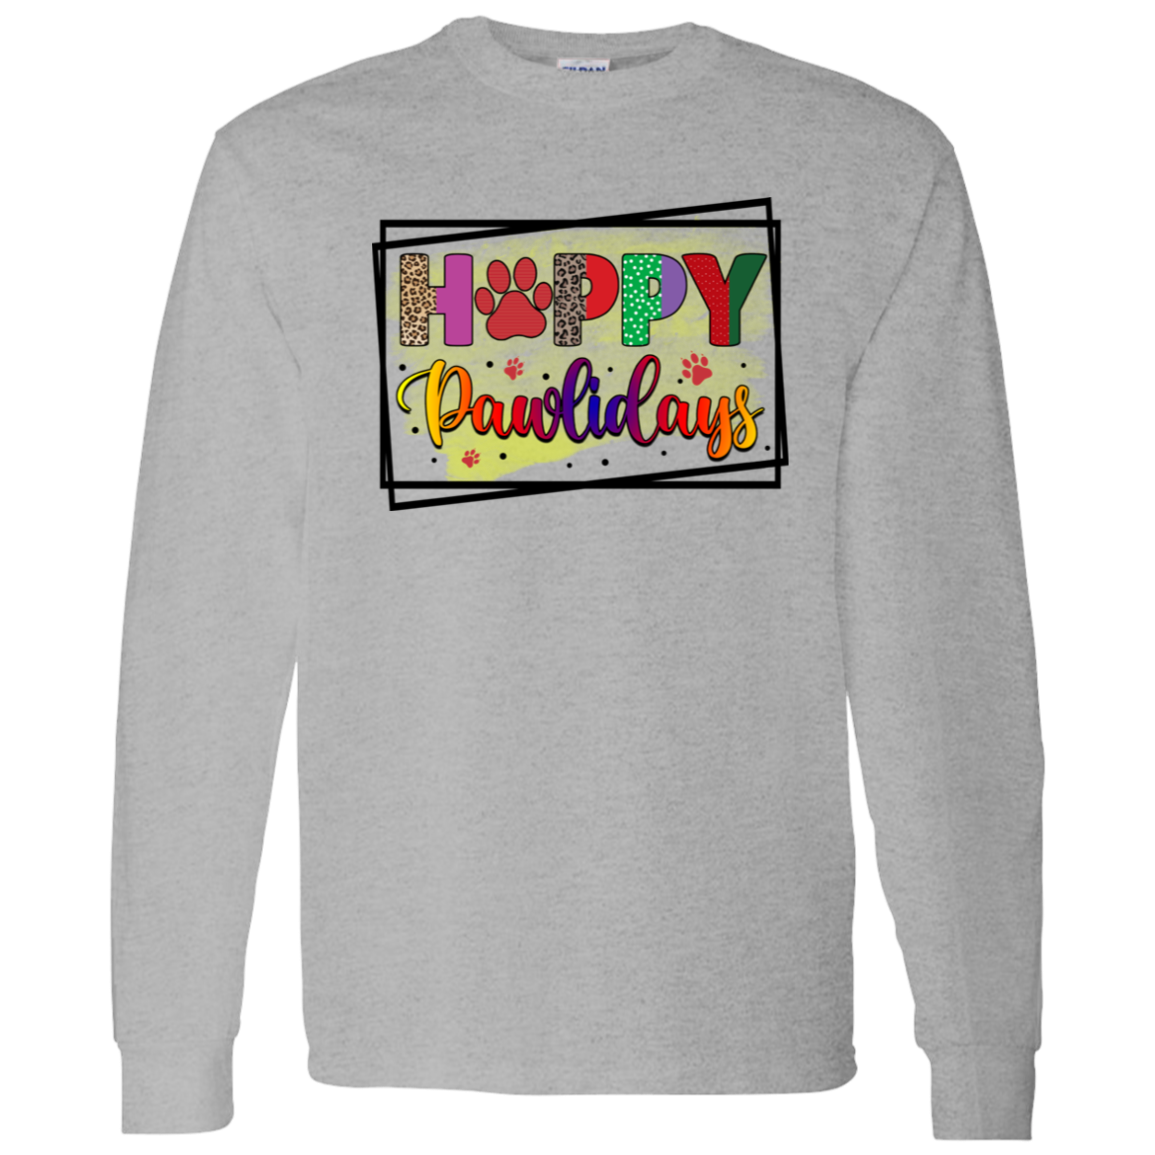 Happy Pawlidays Dog Christmas Long Sleeve T-Shirt